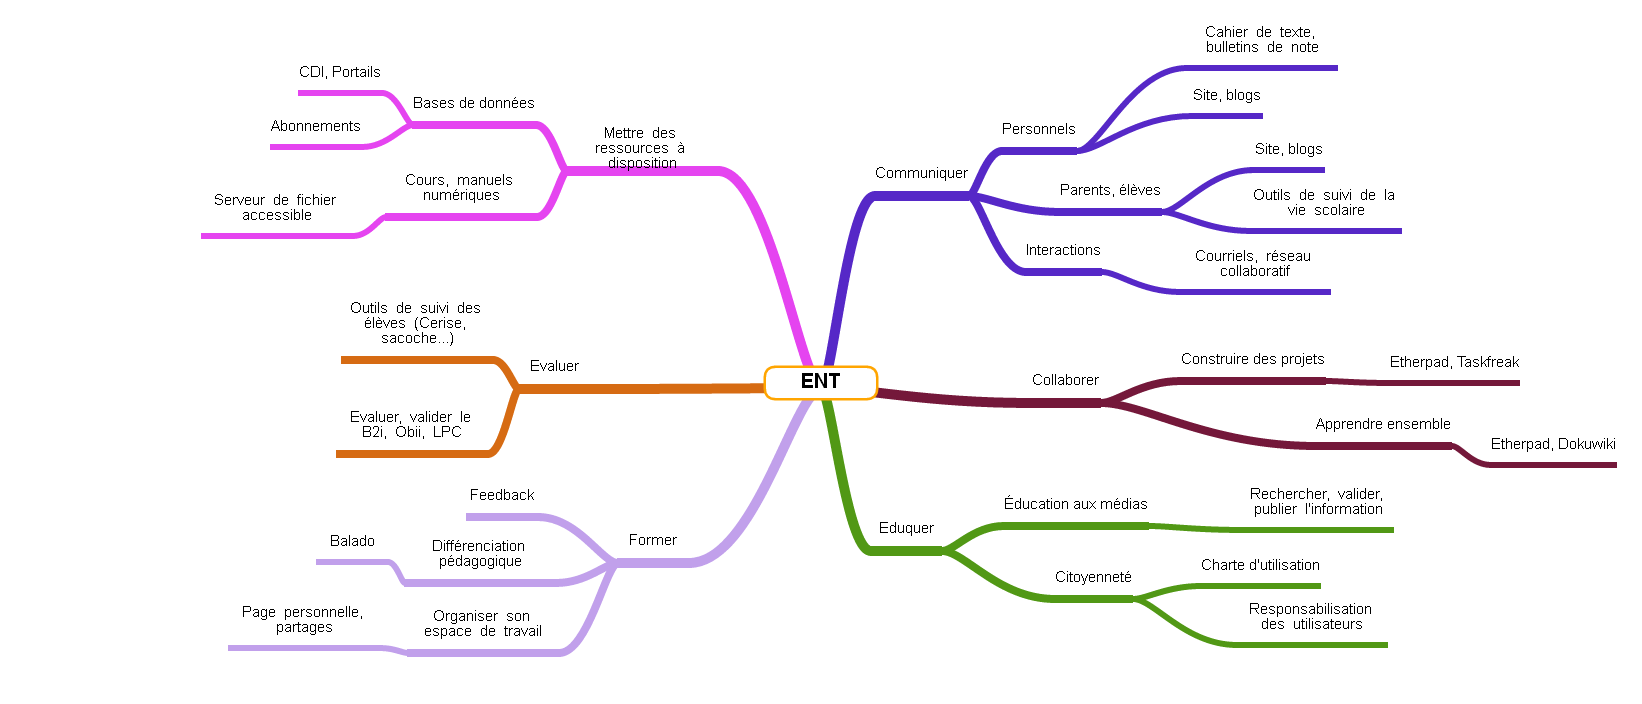 Carte mentale de l'ENT (réalisée avec Framindmap)